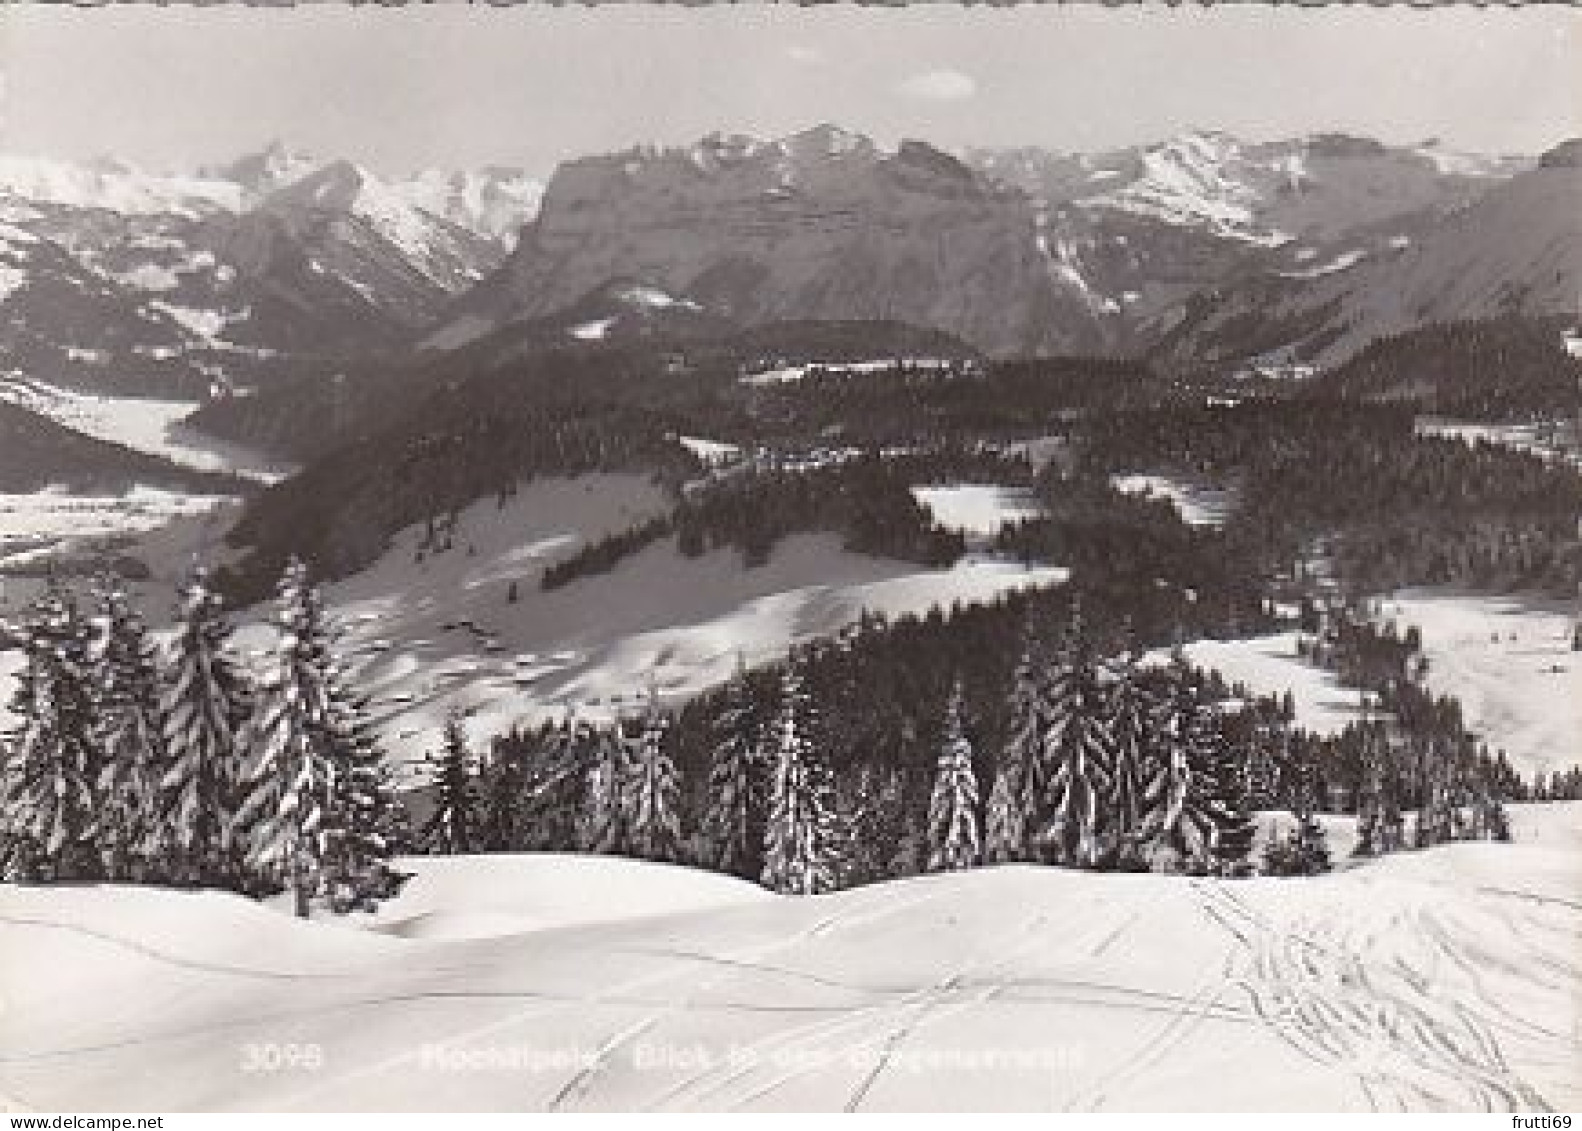 AK 153705 AUSTRIA - Hochälpele - Blick In Den Bregenzerwald - Bregenzerwaldorte